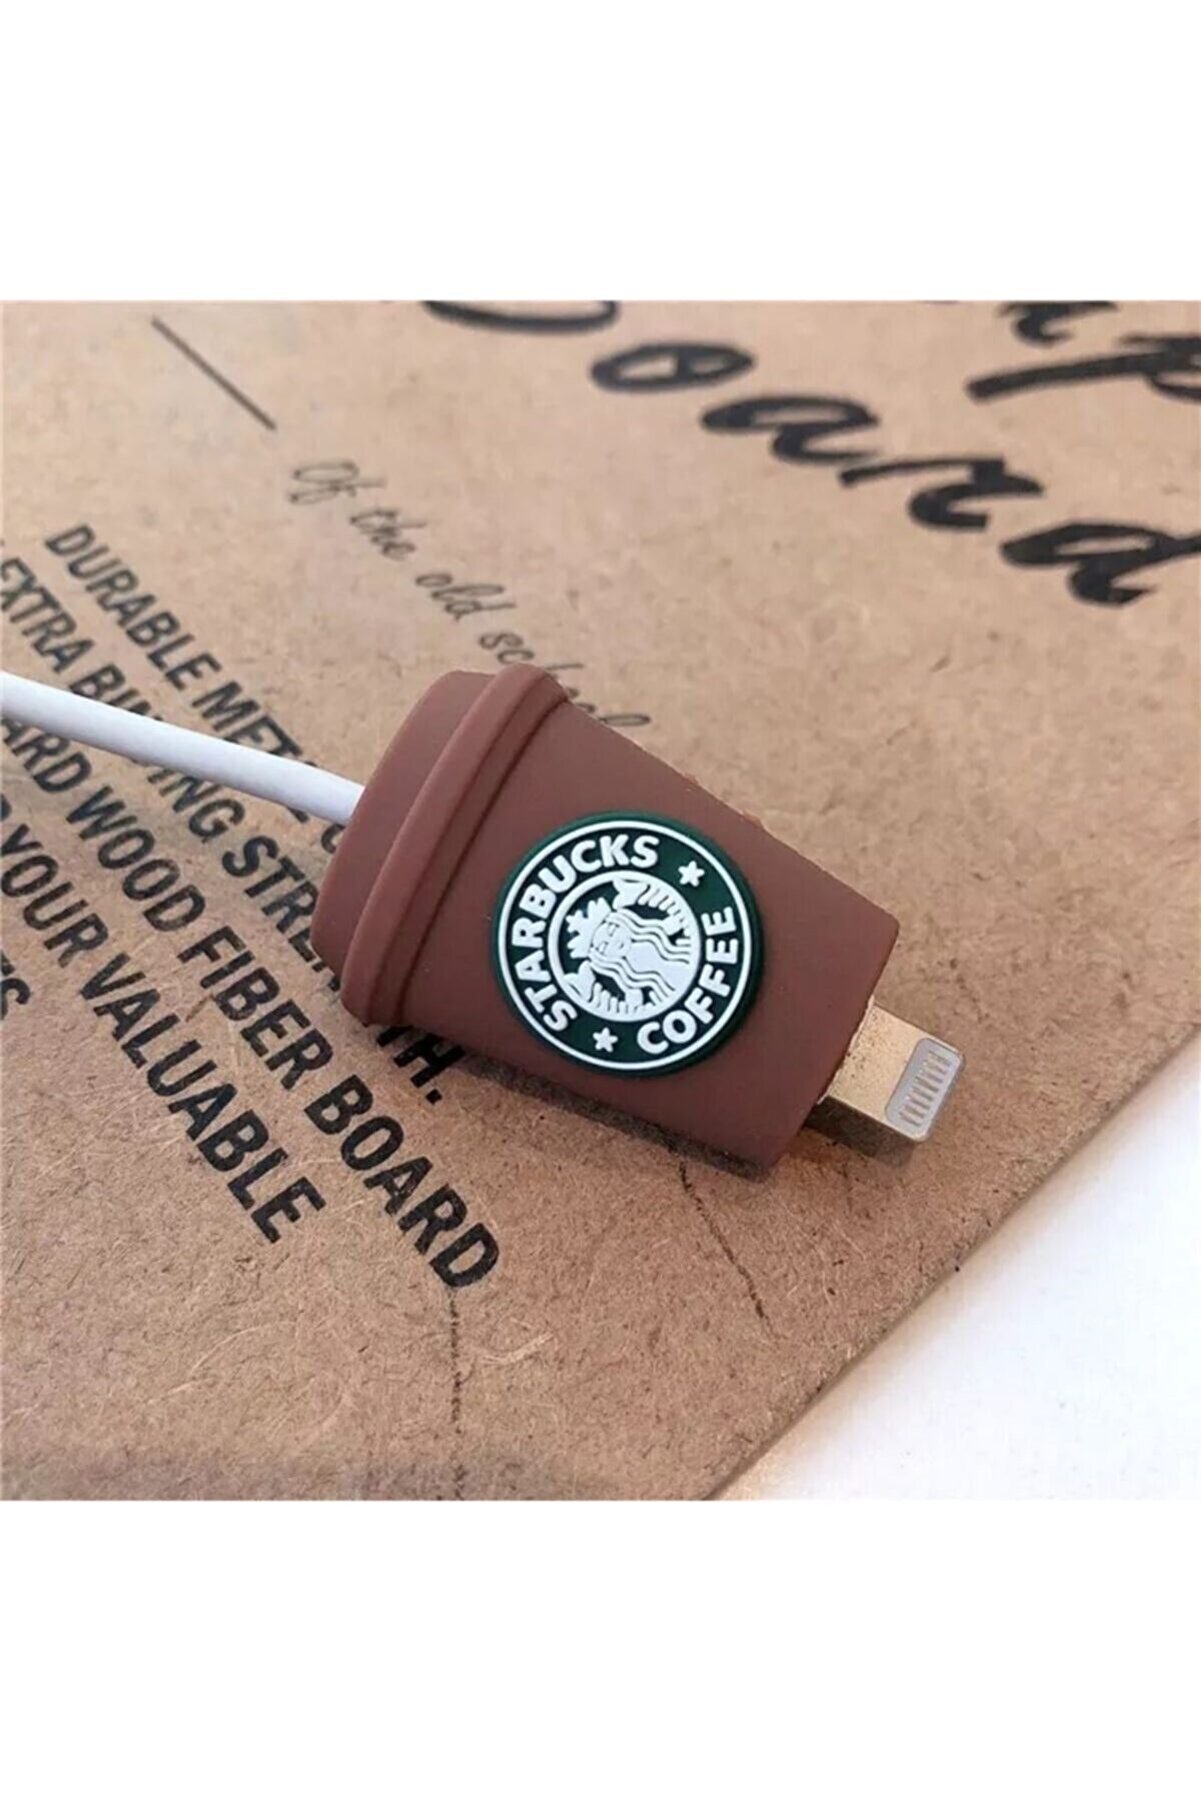 MY MÜRDÜM Yeni Seri Sevimli Silikon Starbucks Kablo Koruyucu